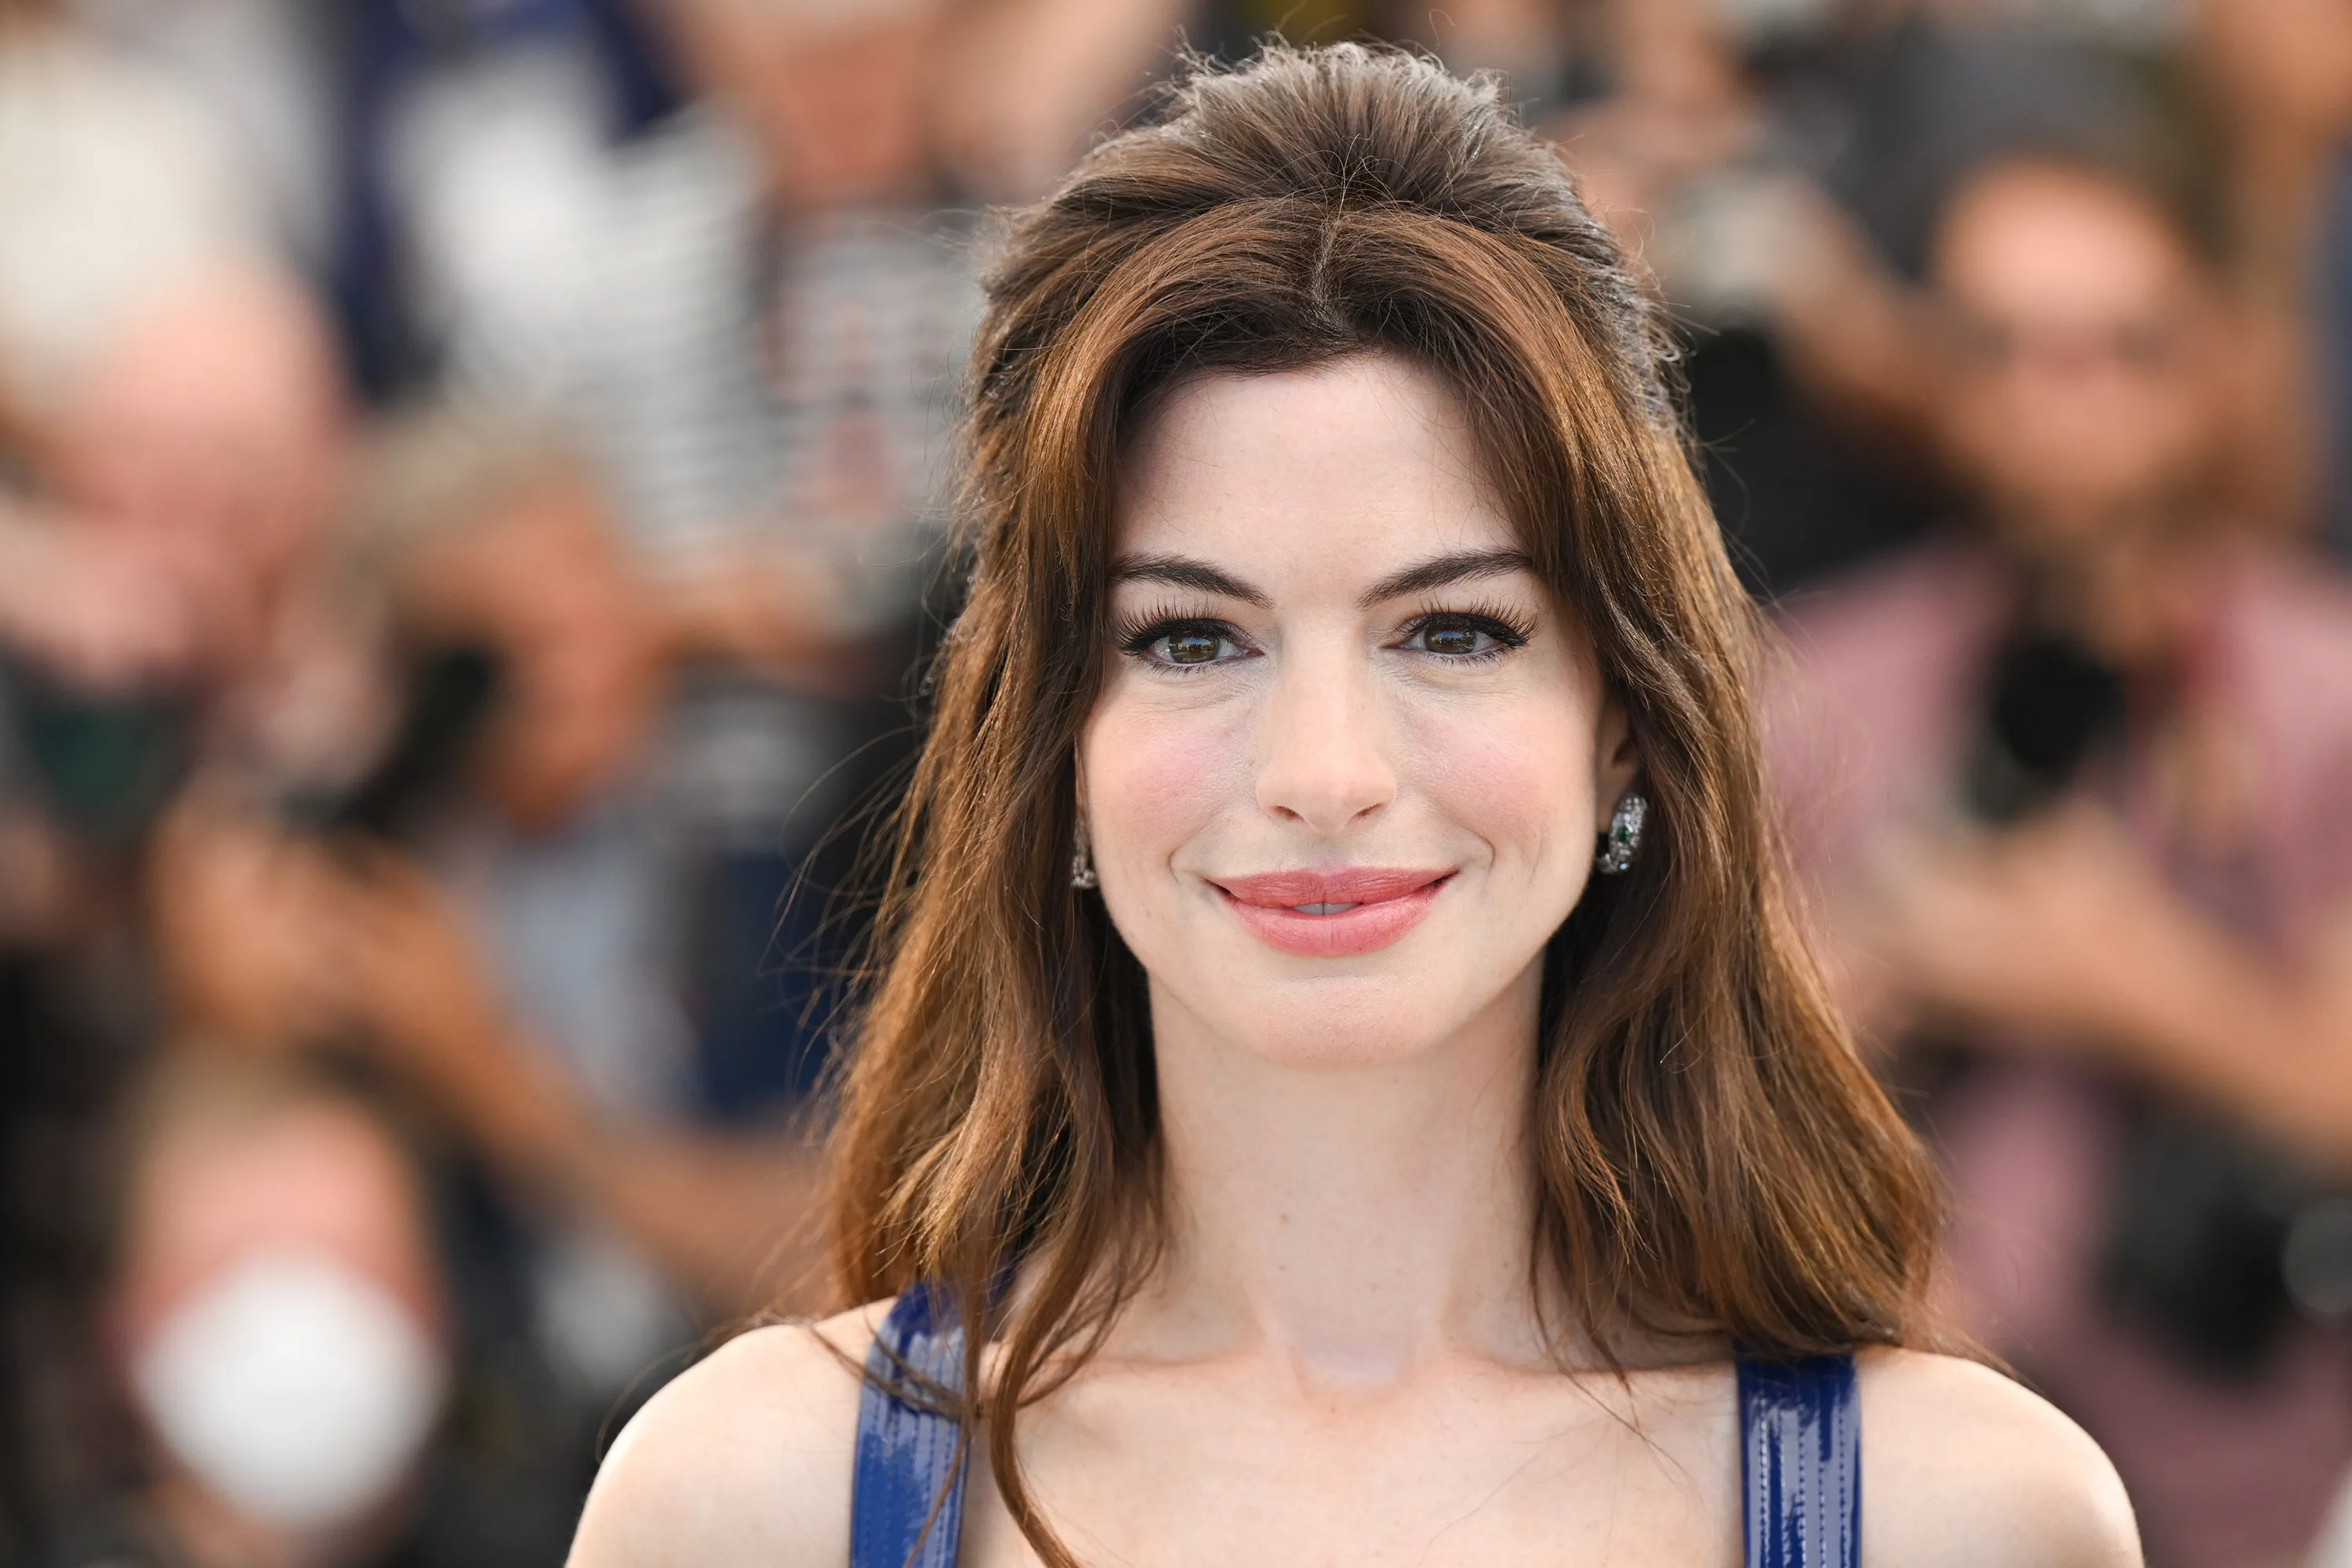 4 looks en 24 horas: El increíble estilo de Anne Hathaway